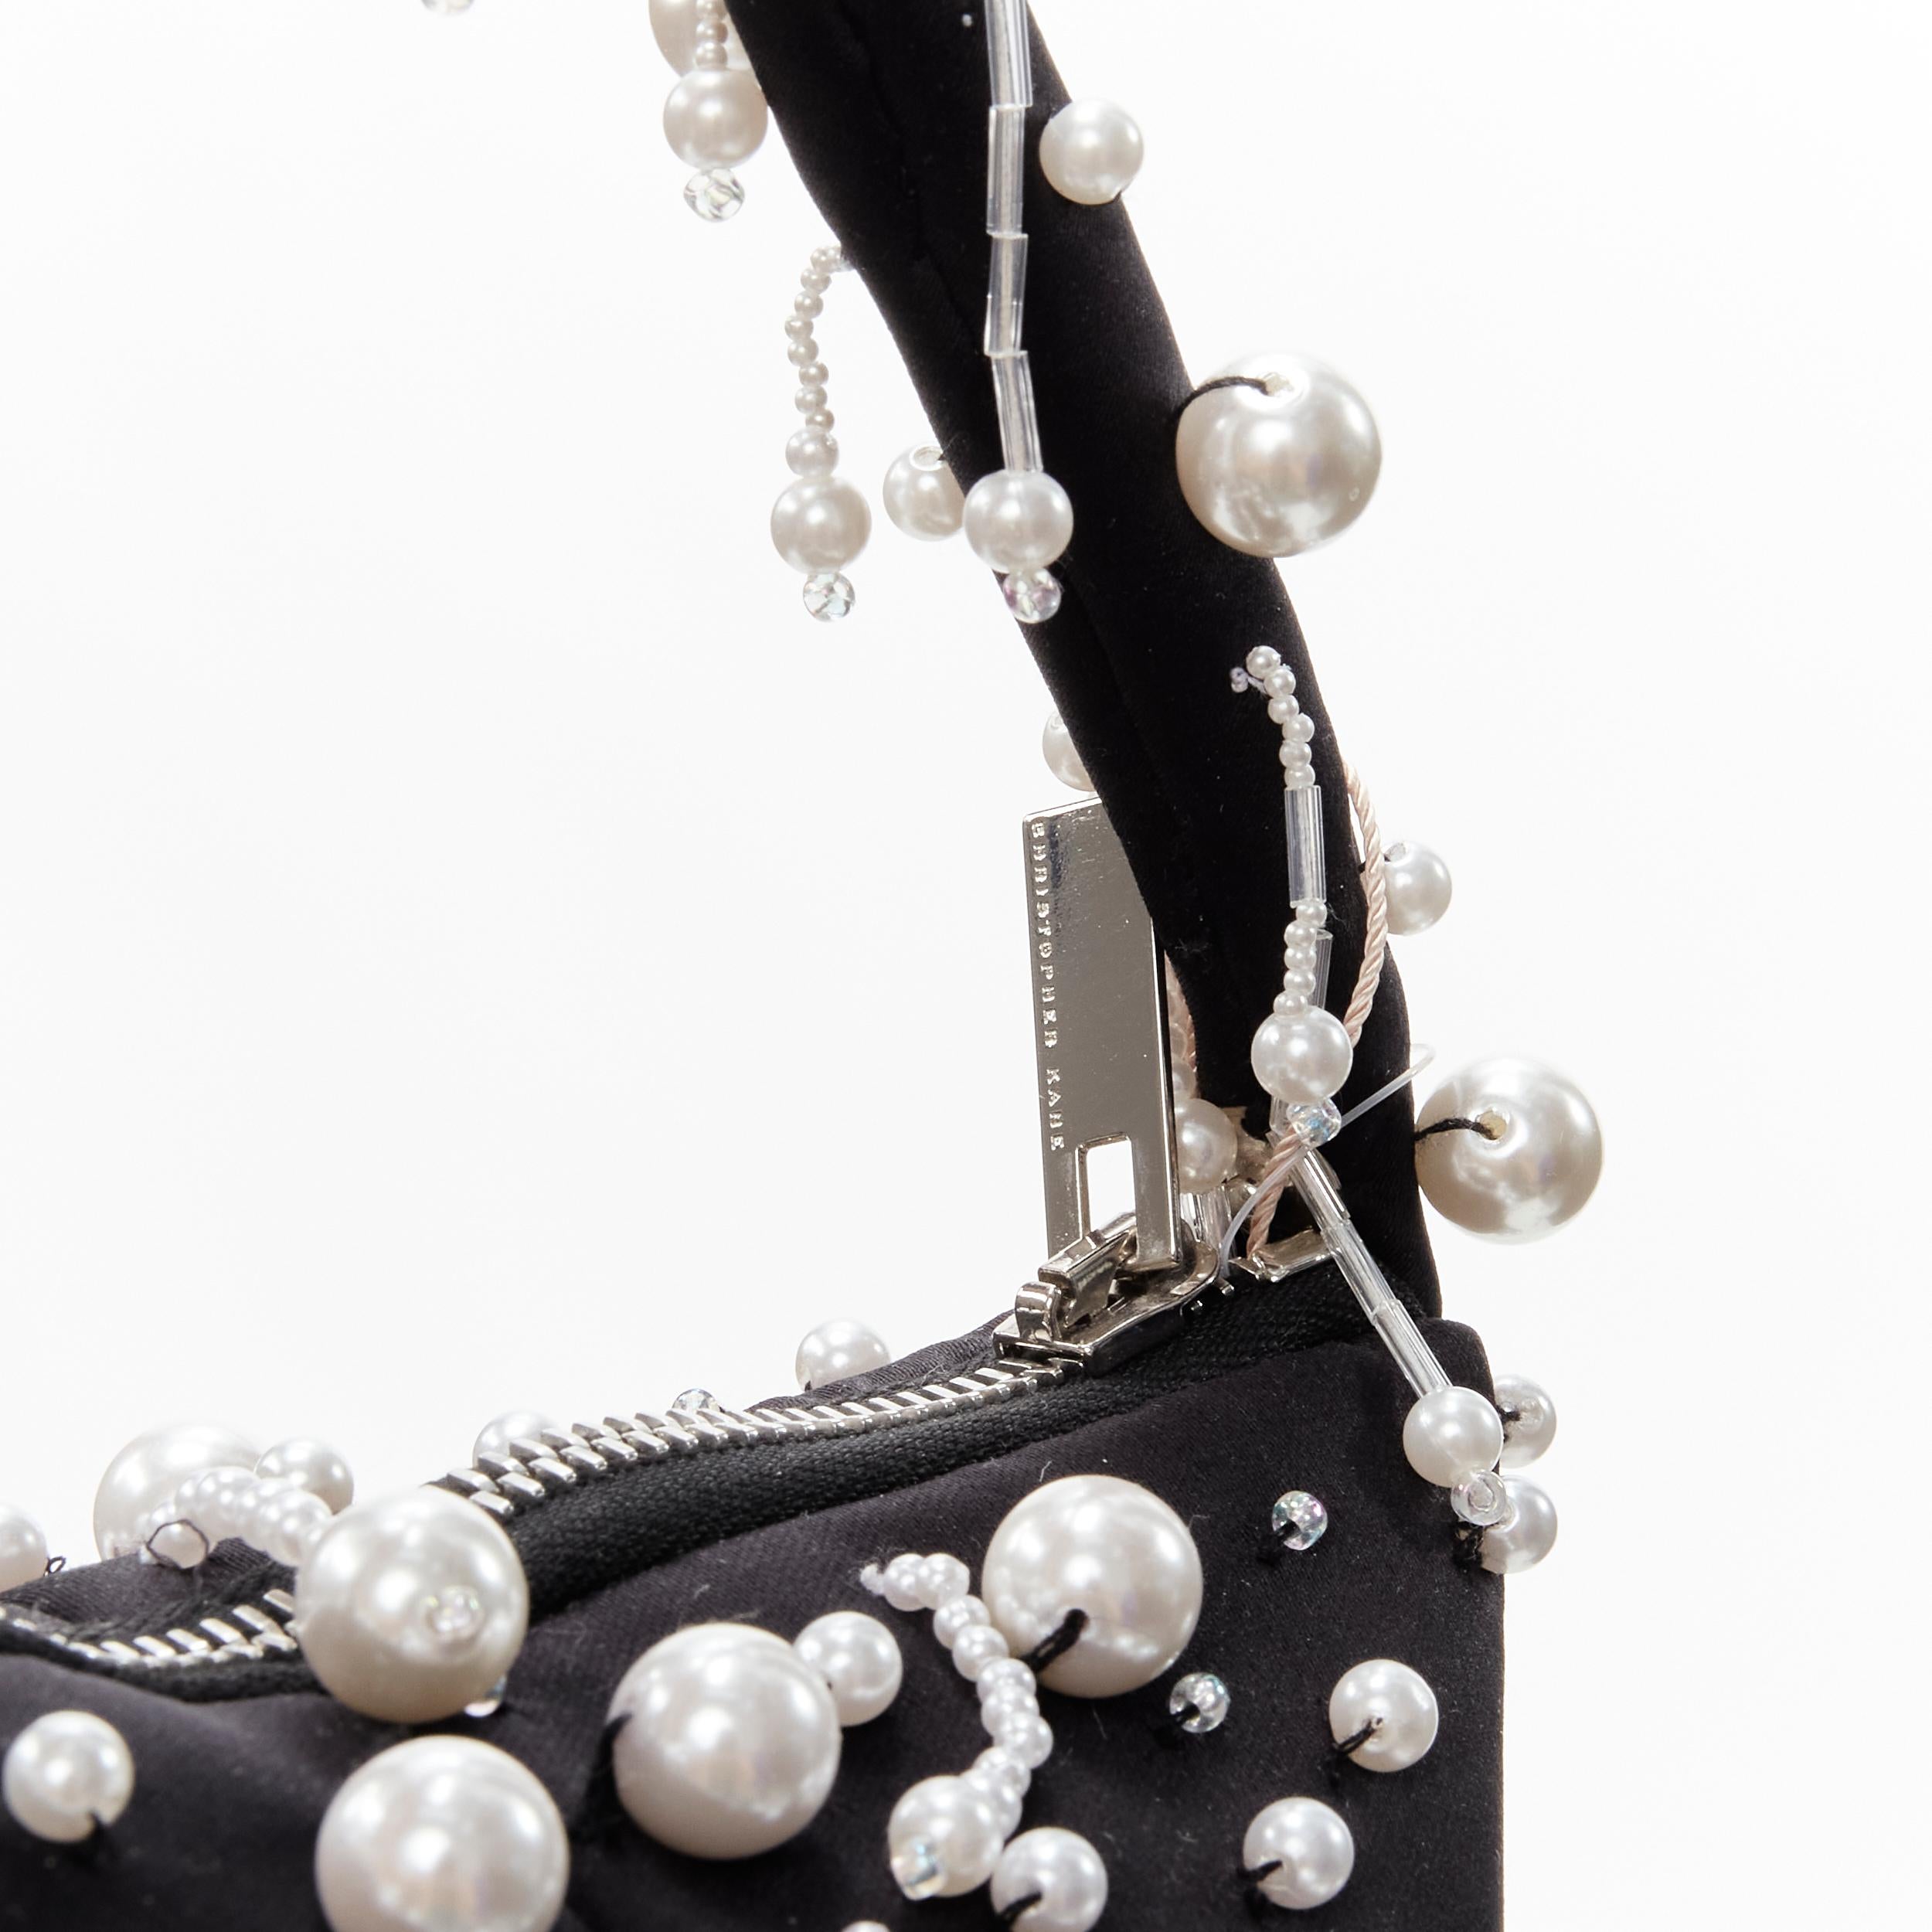 new CHRISTOPHER KANE Runway pearl embellished black satin evening bag 3